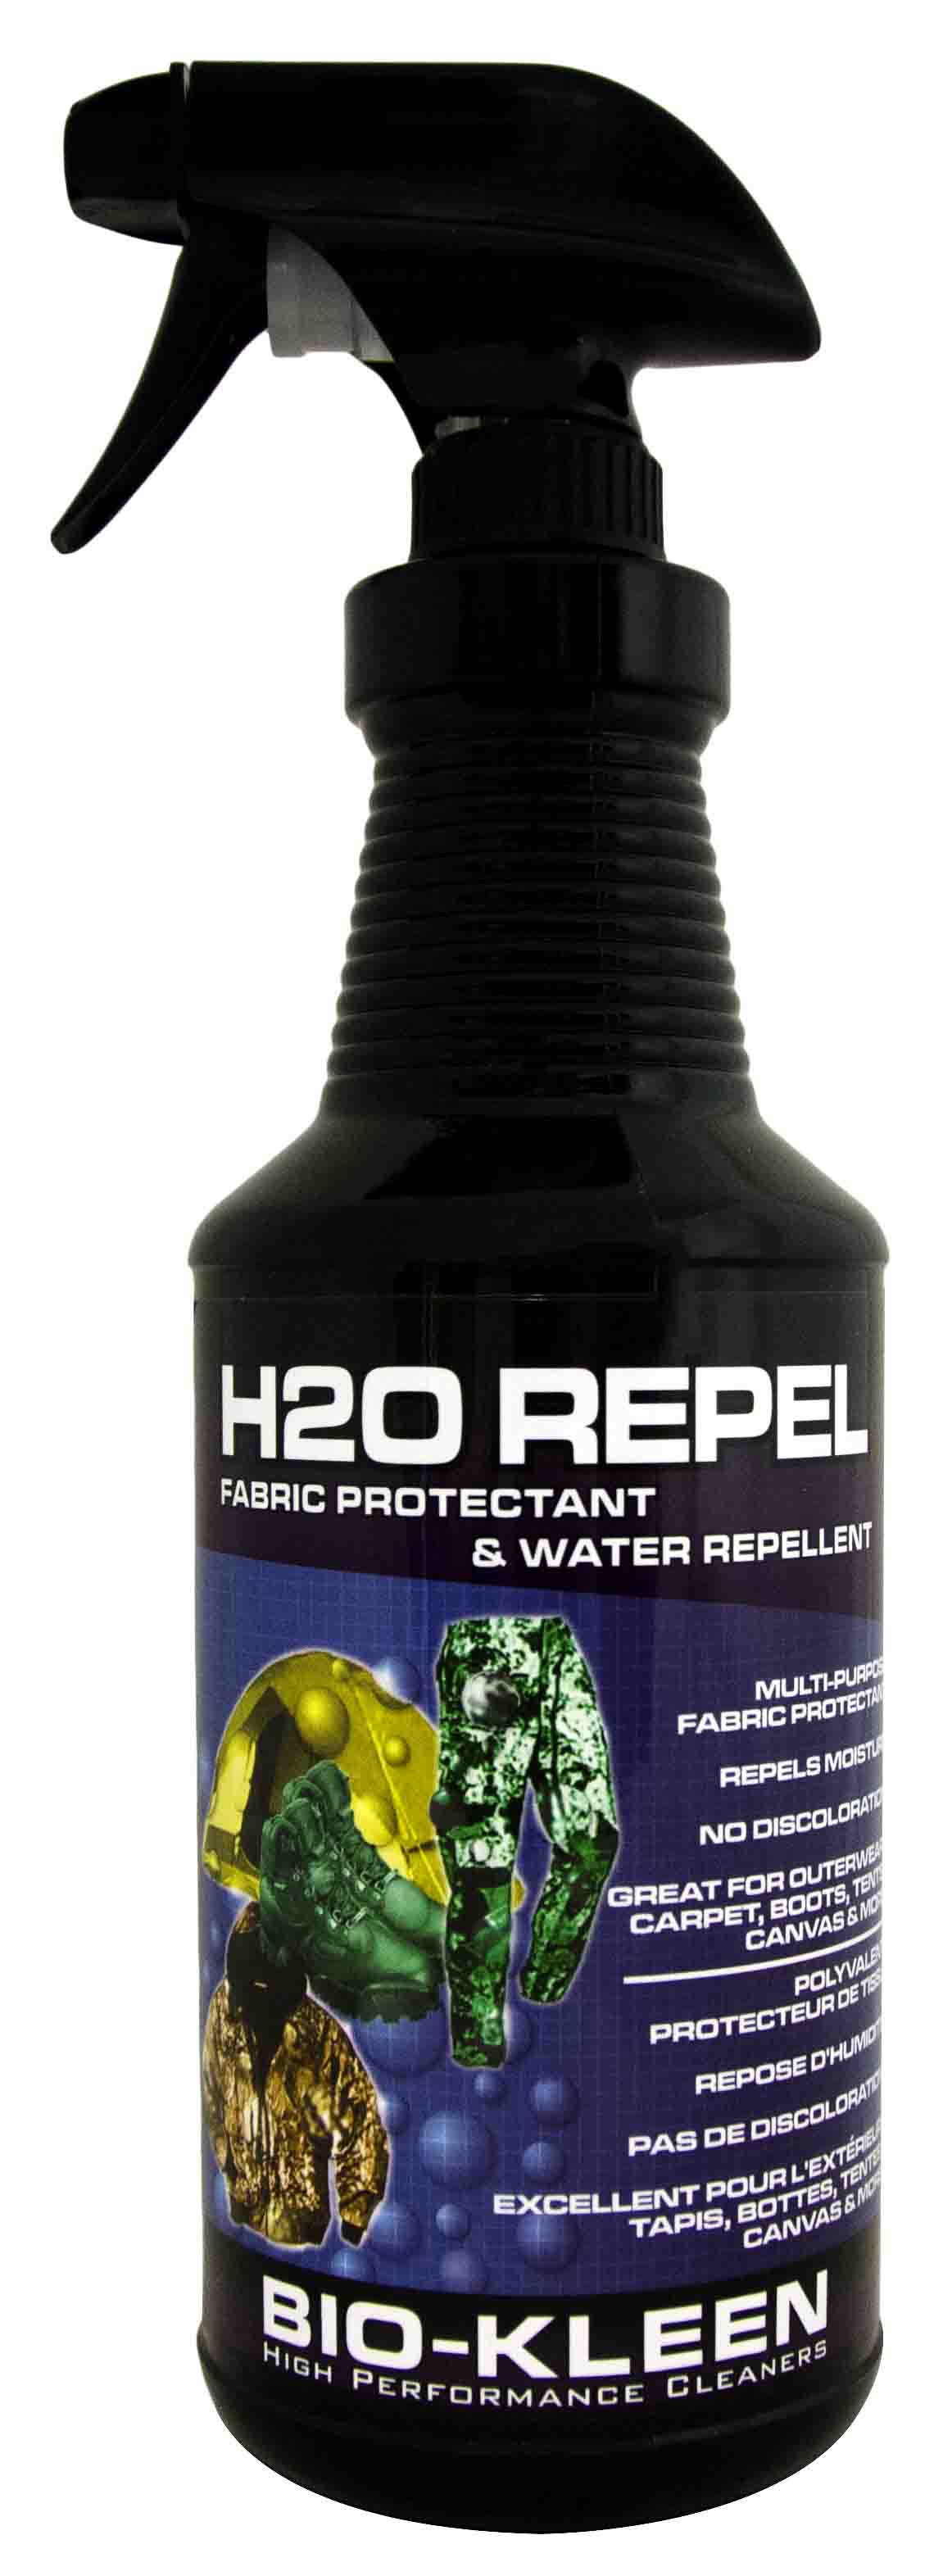 water repellant hccke water repellent coating